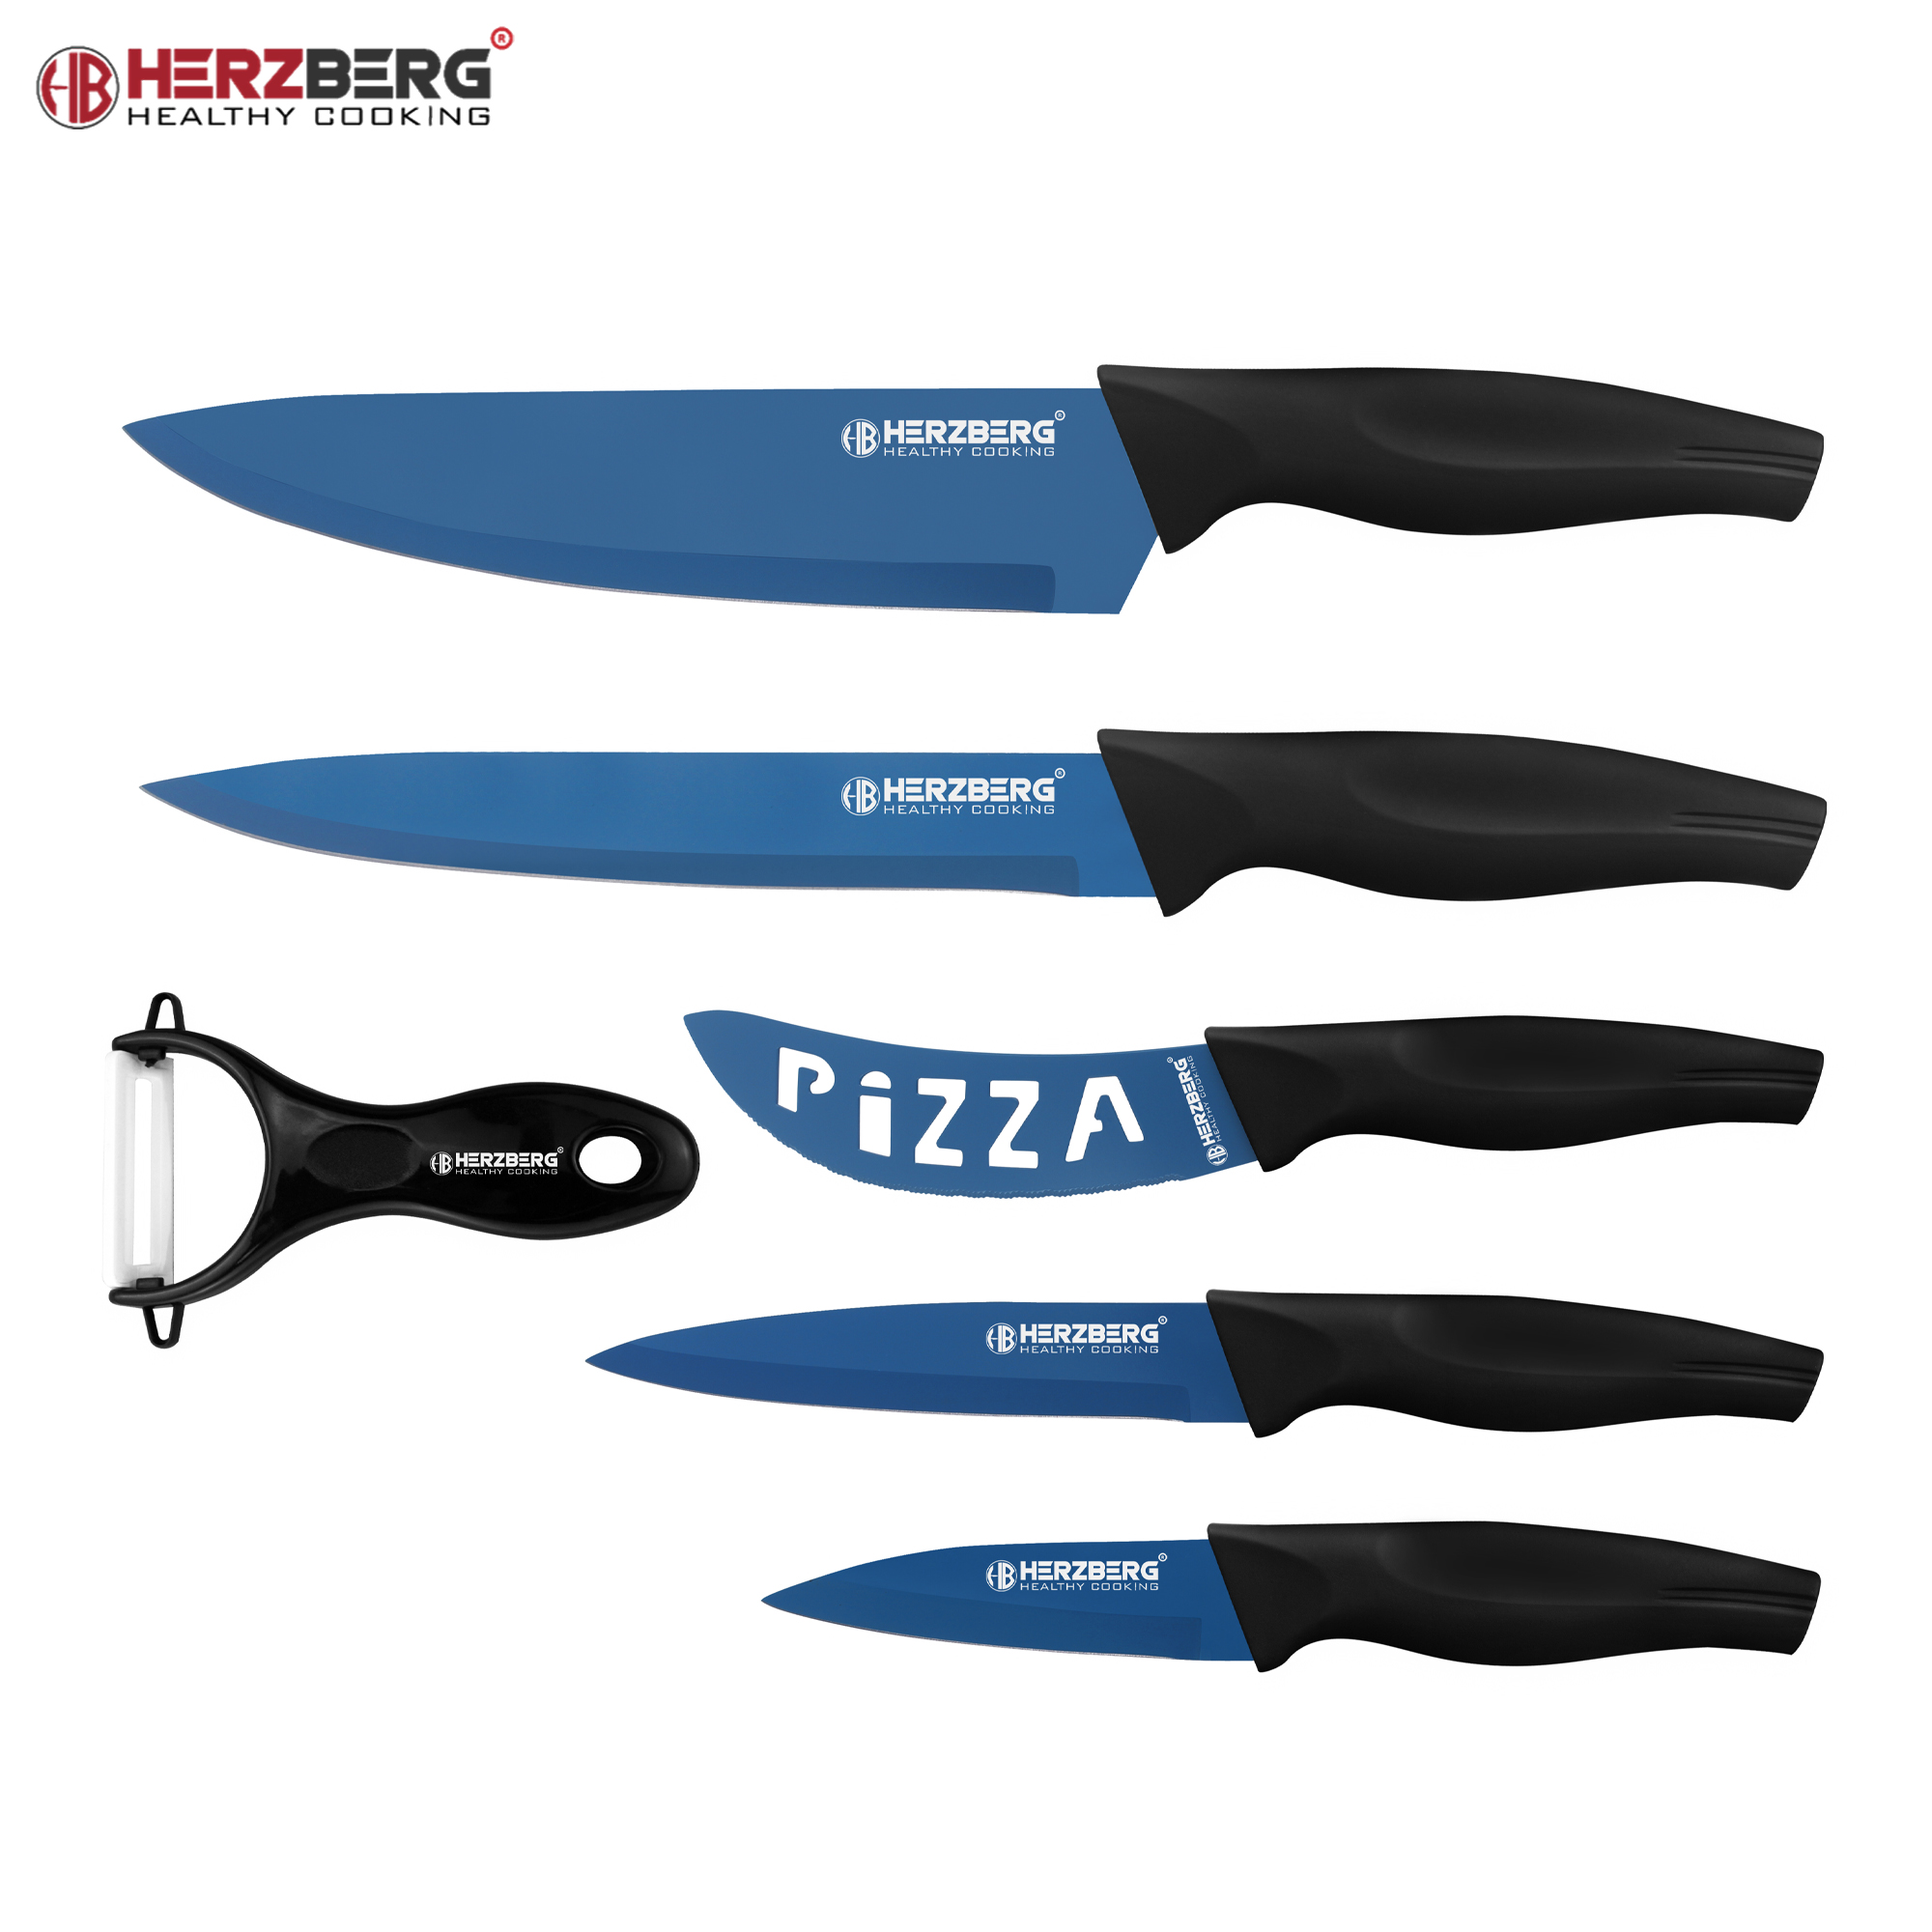 Herzberg HG-KL6BLU: 5 Pieces Marble Coated Knife Set - Blue